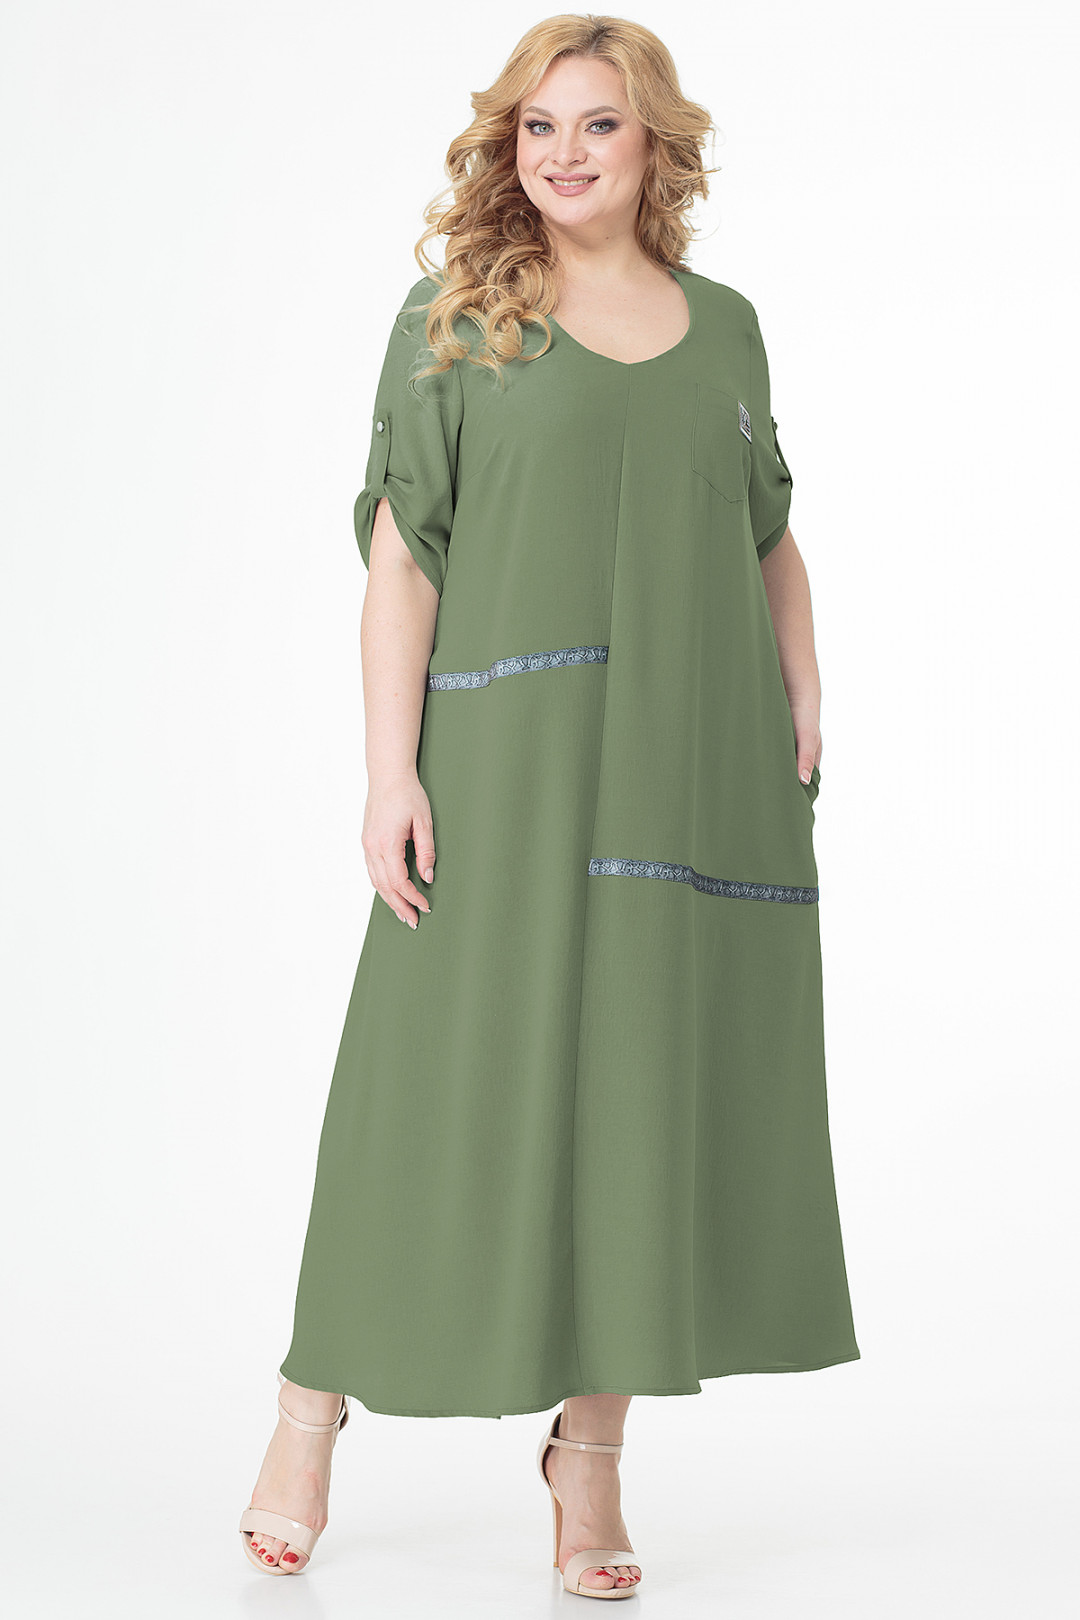 Платье ALGRANDA (Новелла Шарм) 3686-4